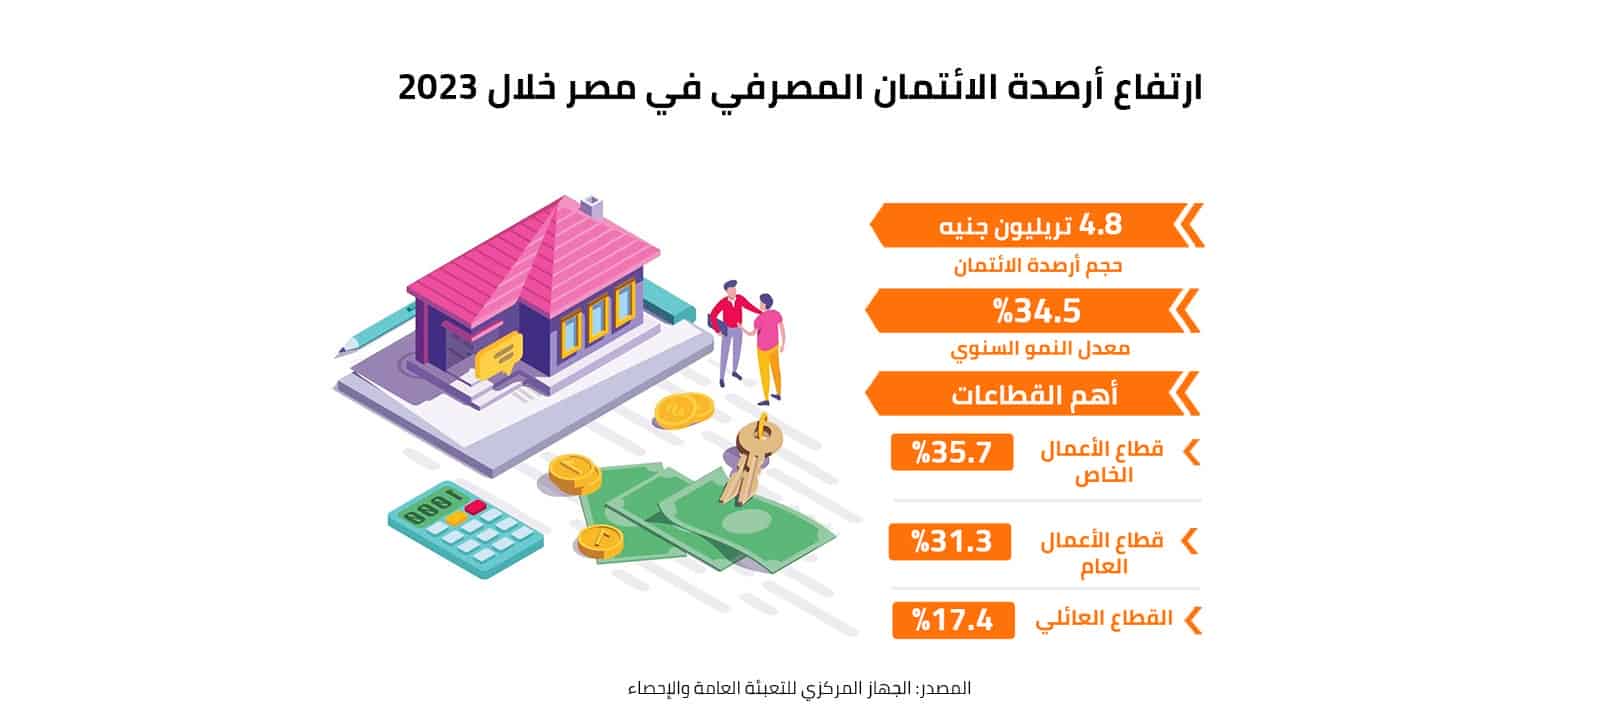 ارتفاع أرصدة الائتمان المصرفي في مصر خلال 2023 